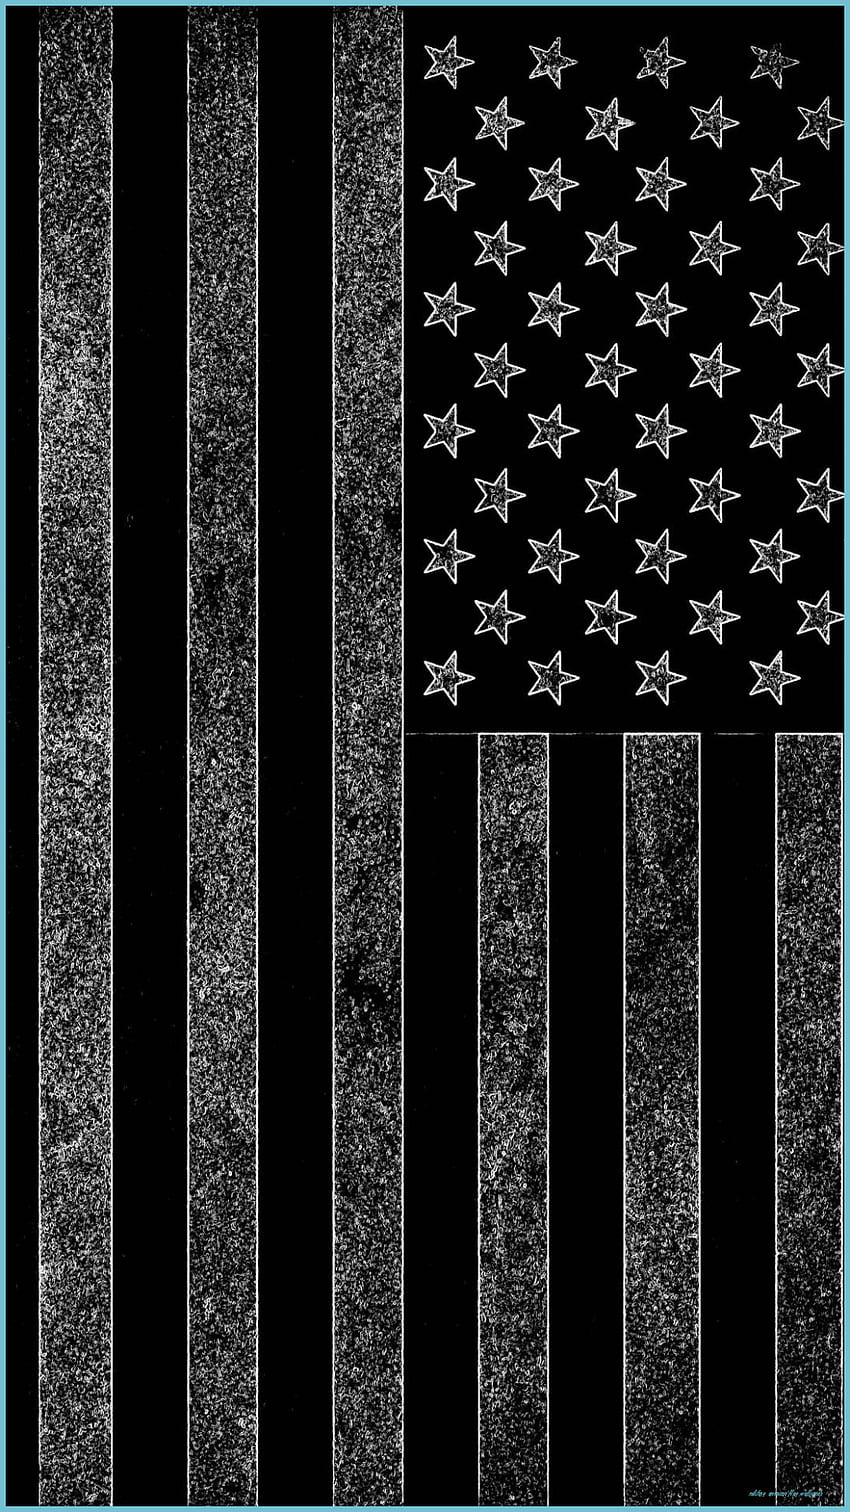 We Shall Defend american american flag patriotic patriotism soldier  veteran HD phone wallpaper  Peakpx